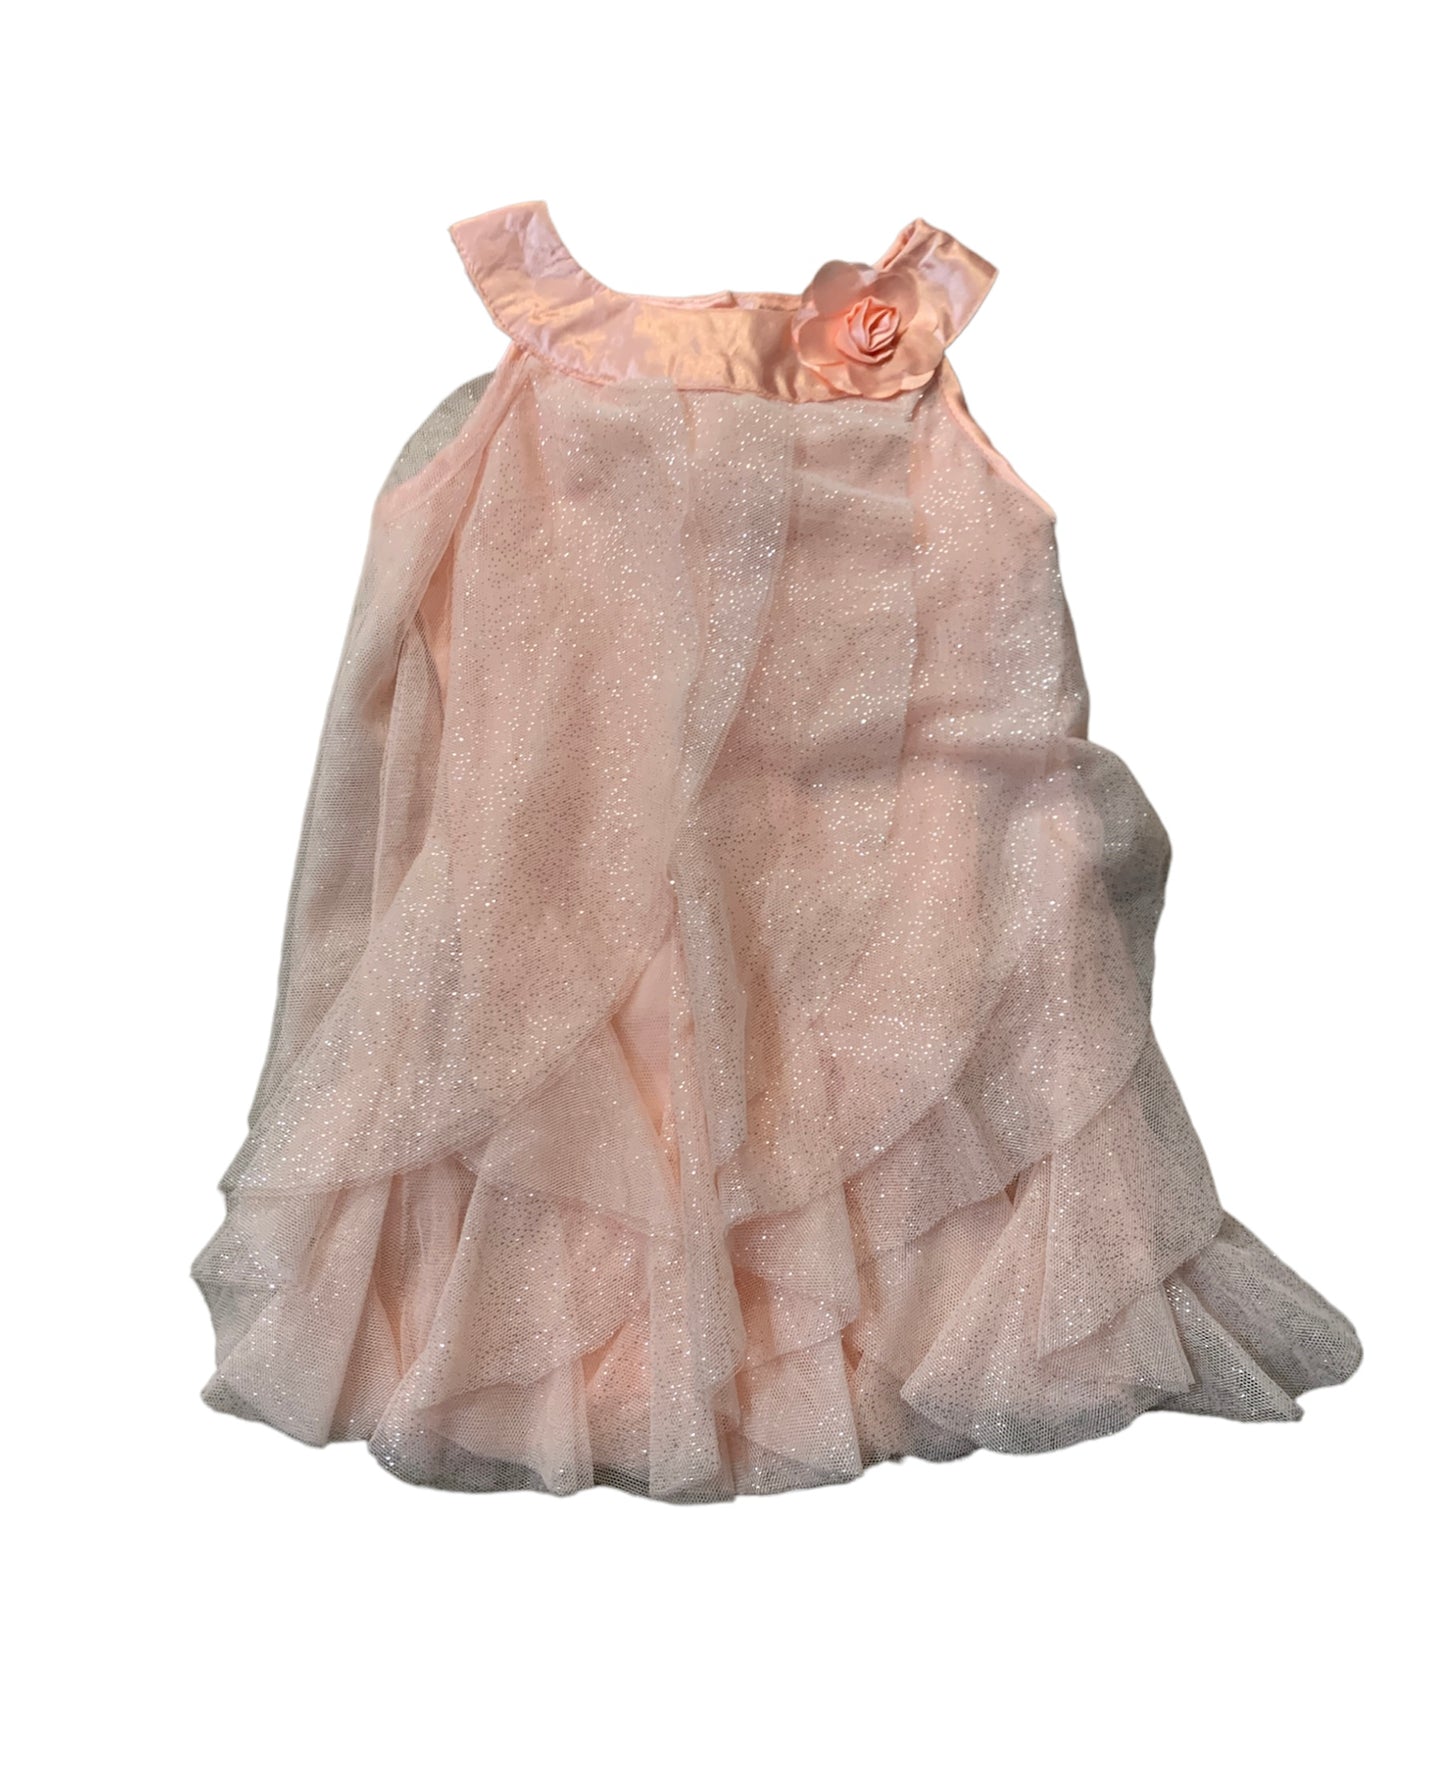 Ruffled Pink Dress Size 6-12m